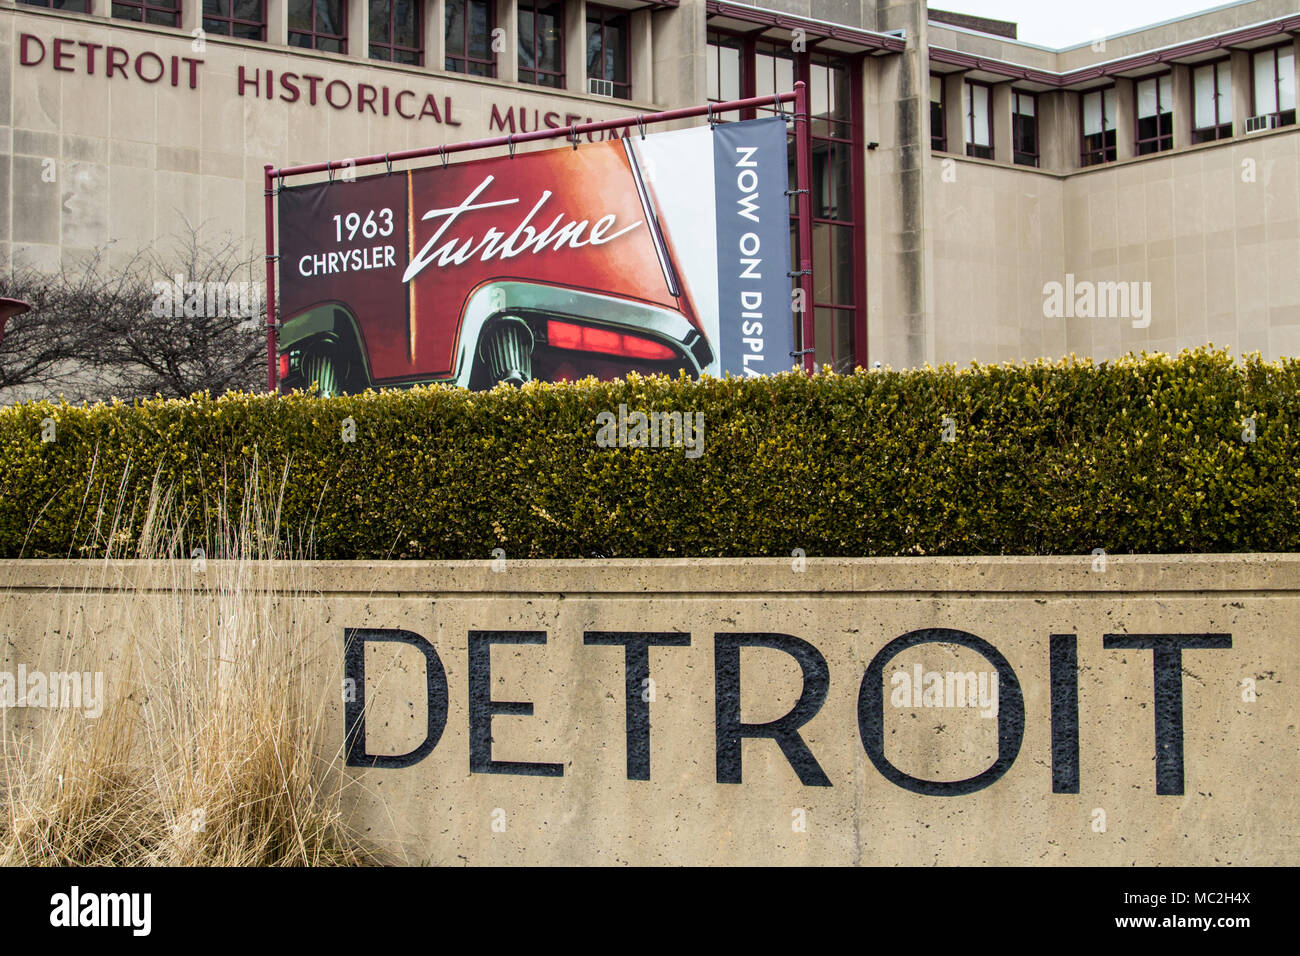 Extérieur de la Detroit Historical Museum. Le musée offre l'entrée gratuite au long de l'année et est considéré comme l'un a voir lors de la visite de Detroit. Banque D'Images